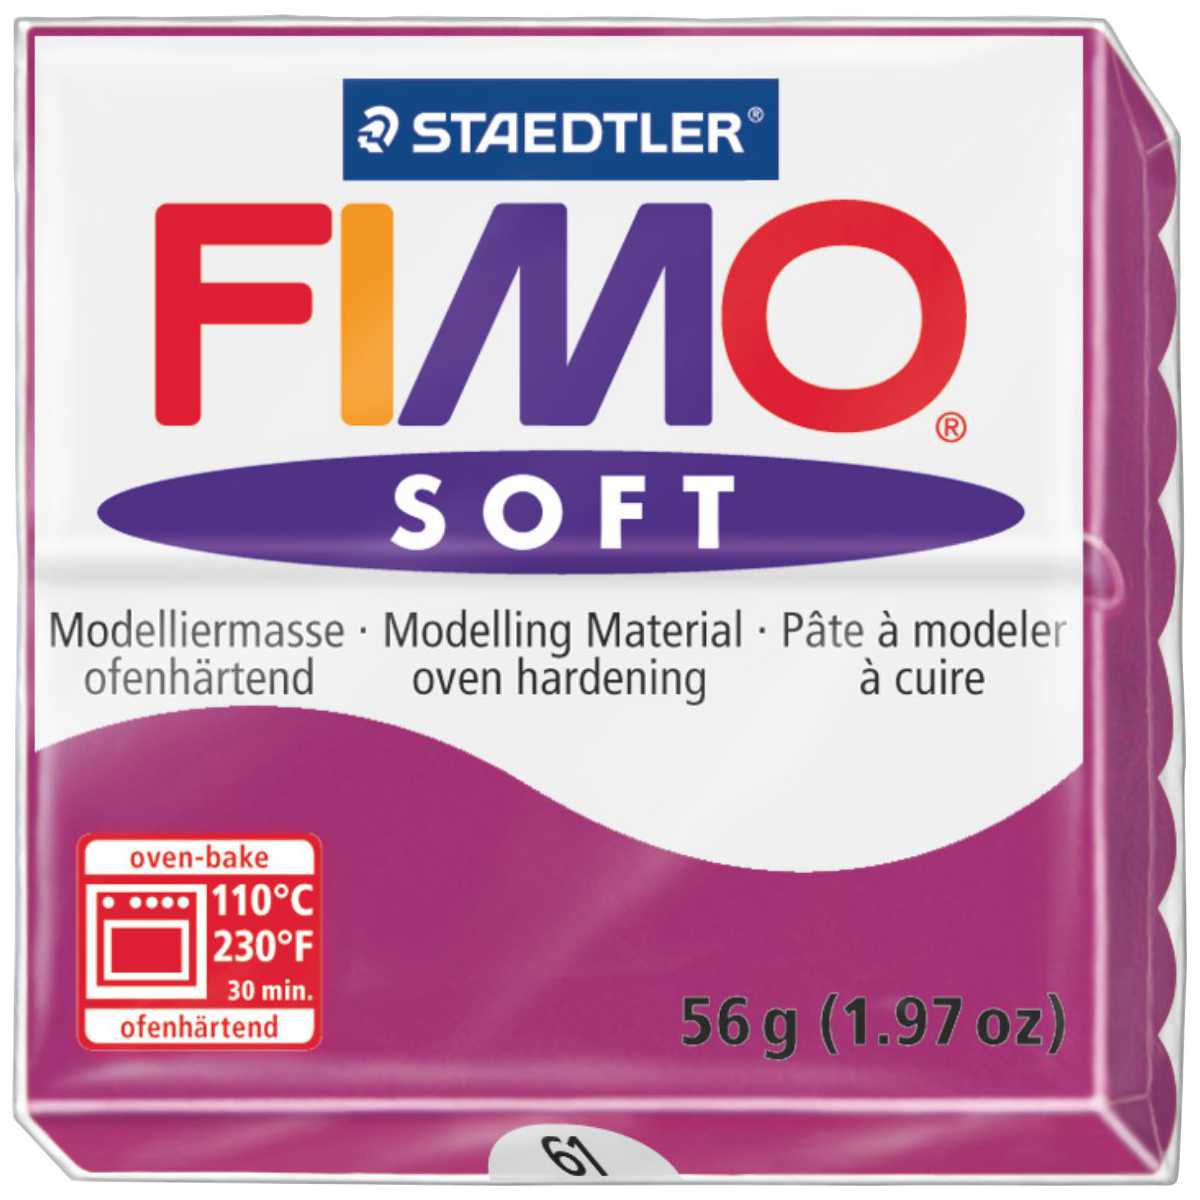 Fimo Soft 61 purpurviolett ofenhärtende Modelliermasse 57g 3,42€/100g 